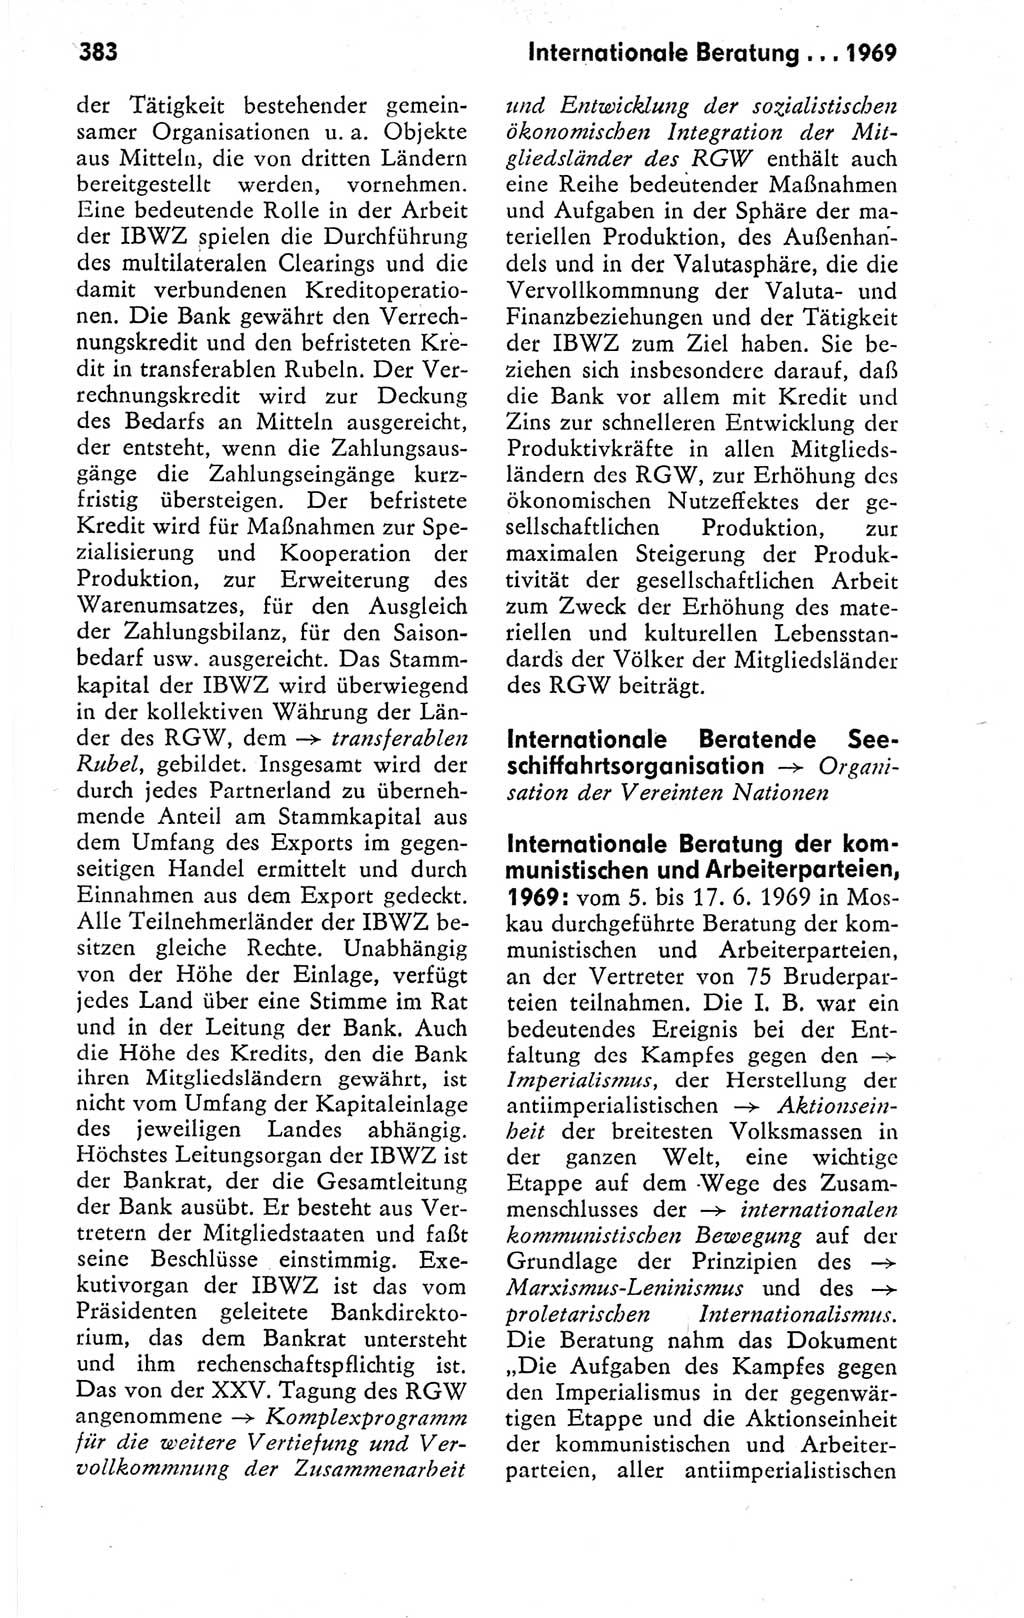 Kleines politisches Wörterbuch [Deutsche Demokratische Republik (DDR)] 1978, Seite 383 (Kl. pol. Wb. DDR 1978, S. 383)